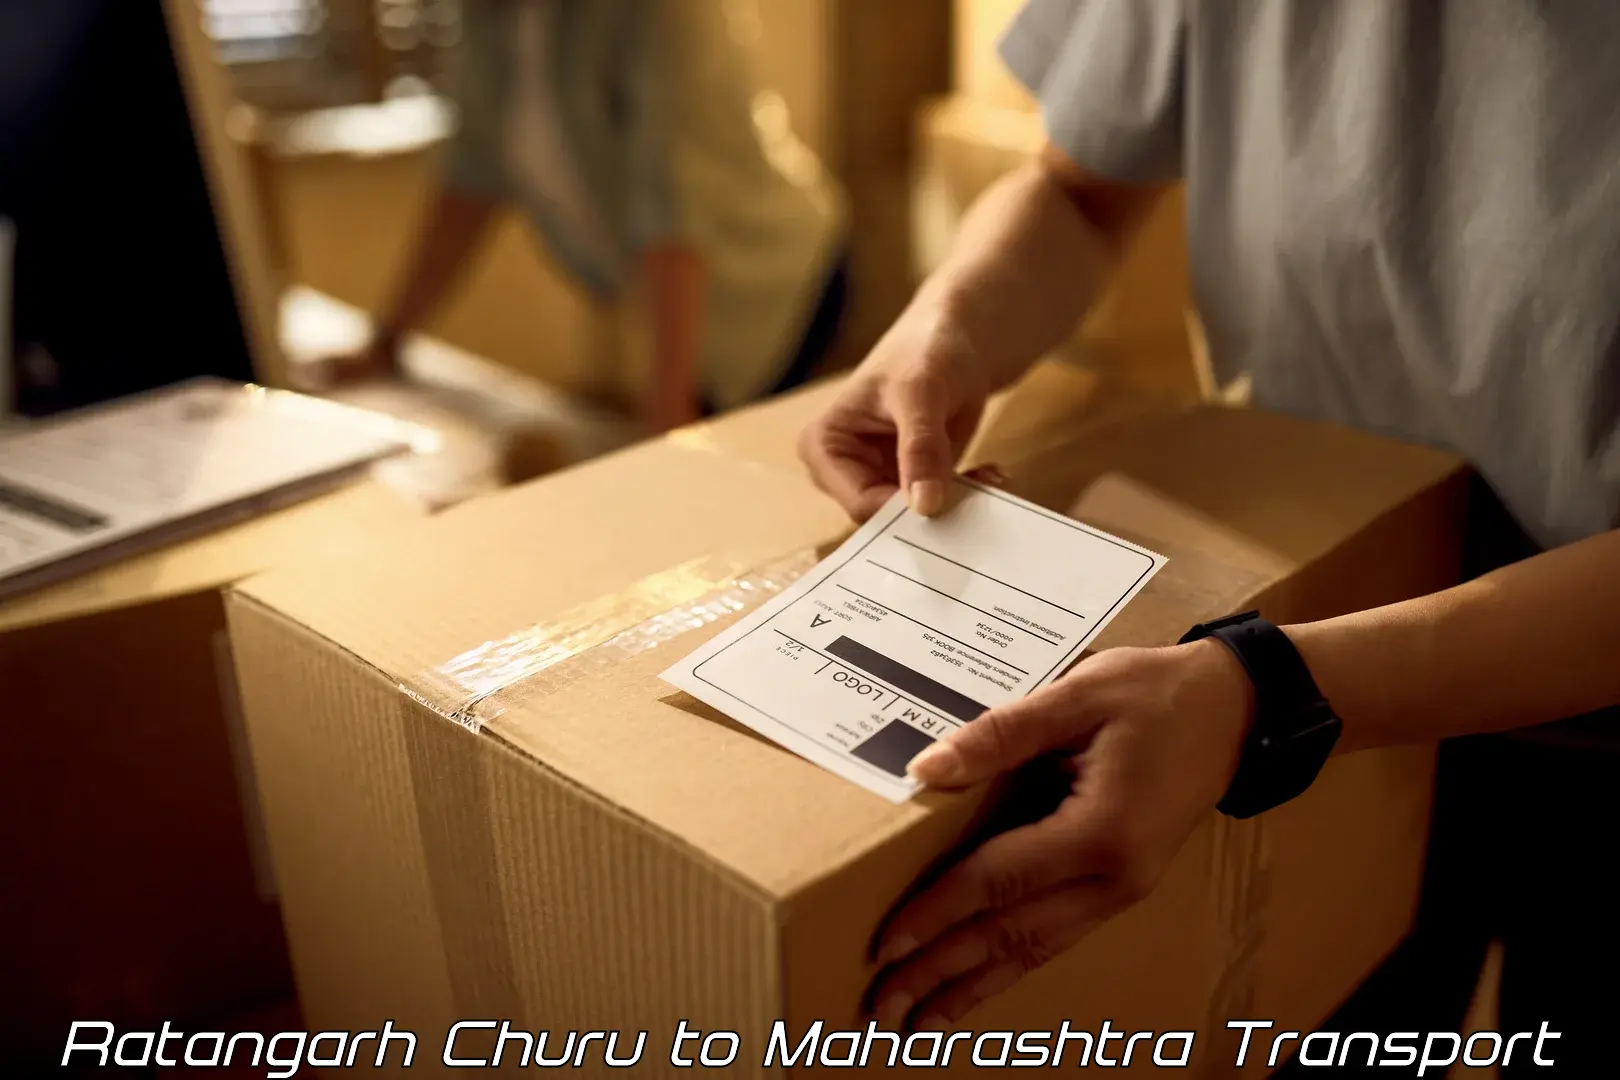 Daily parcel service transport Ratangarh Churu to Rajgurunagar